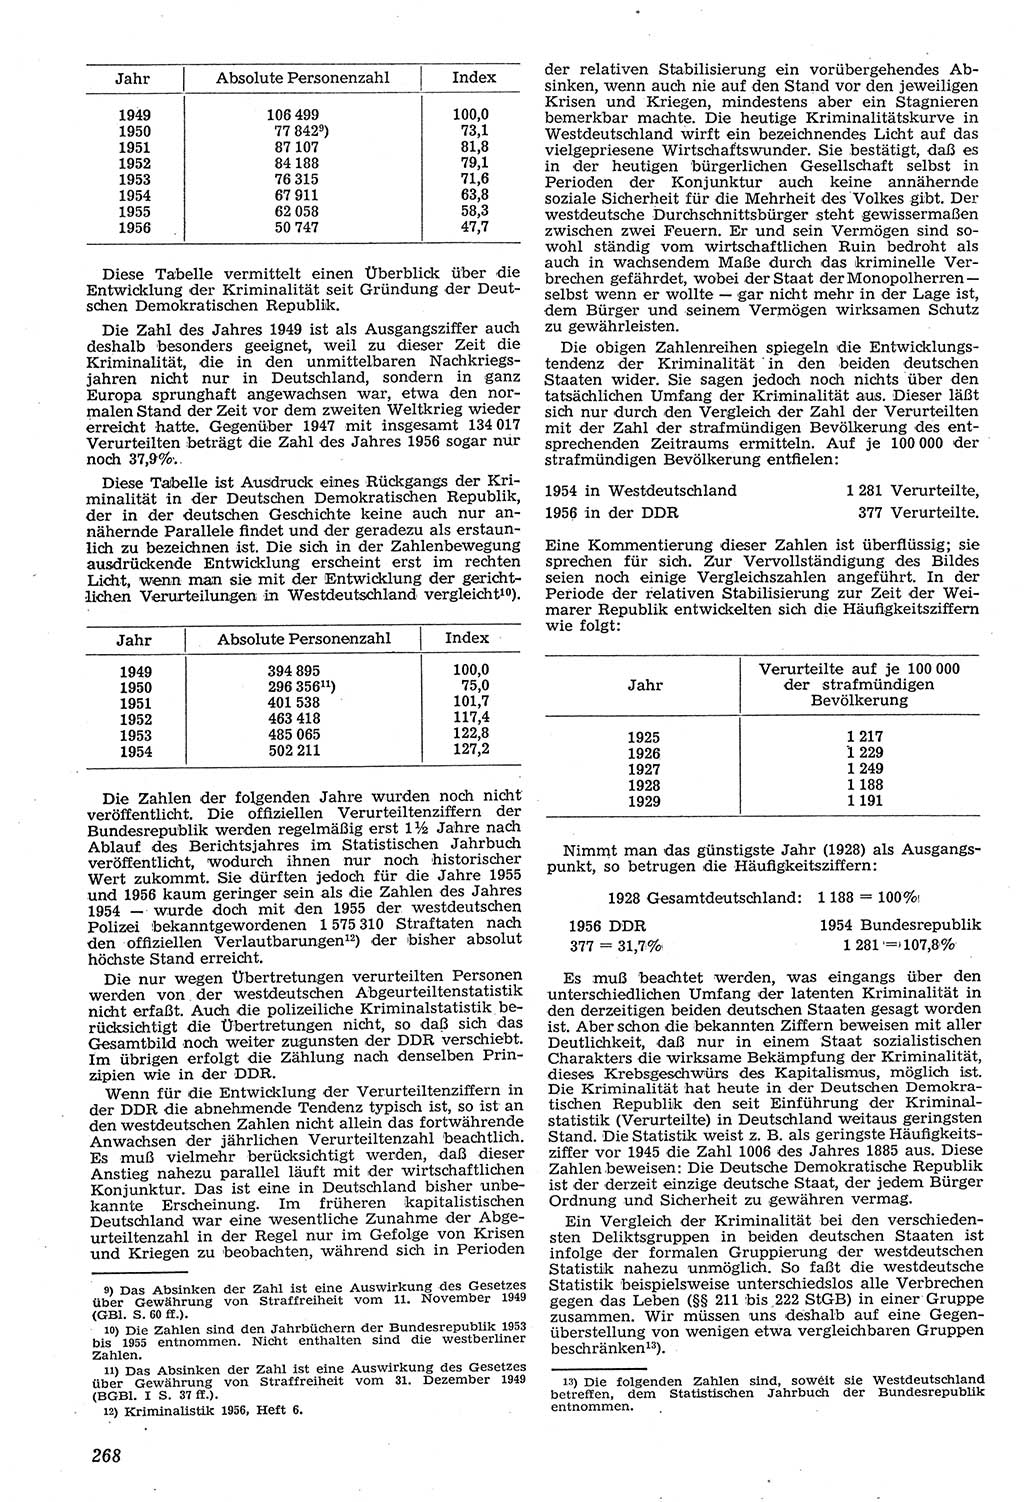 Neue Justiz (NJ), Zeitschrift für Recht und Rechtswissenschaft [Deutsche Demokratische Republik (DDR)], 11. Jahrgang 1957, Seite 268 (NJ DDR 1957, S. 268)